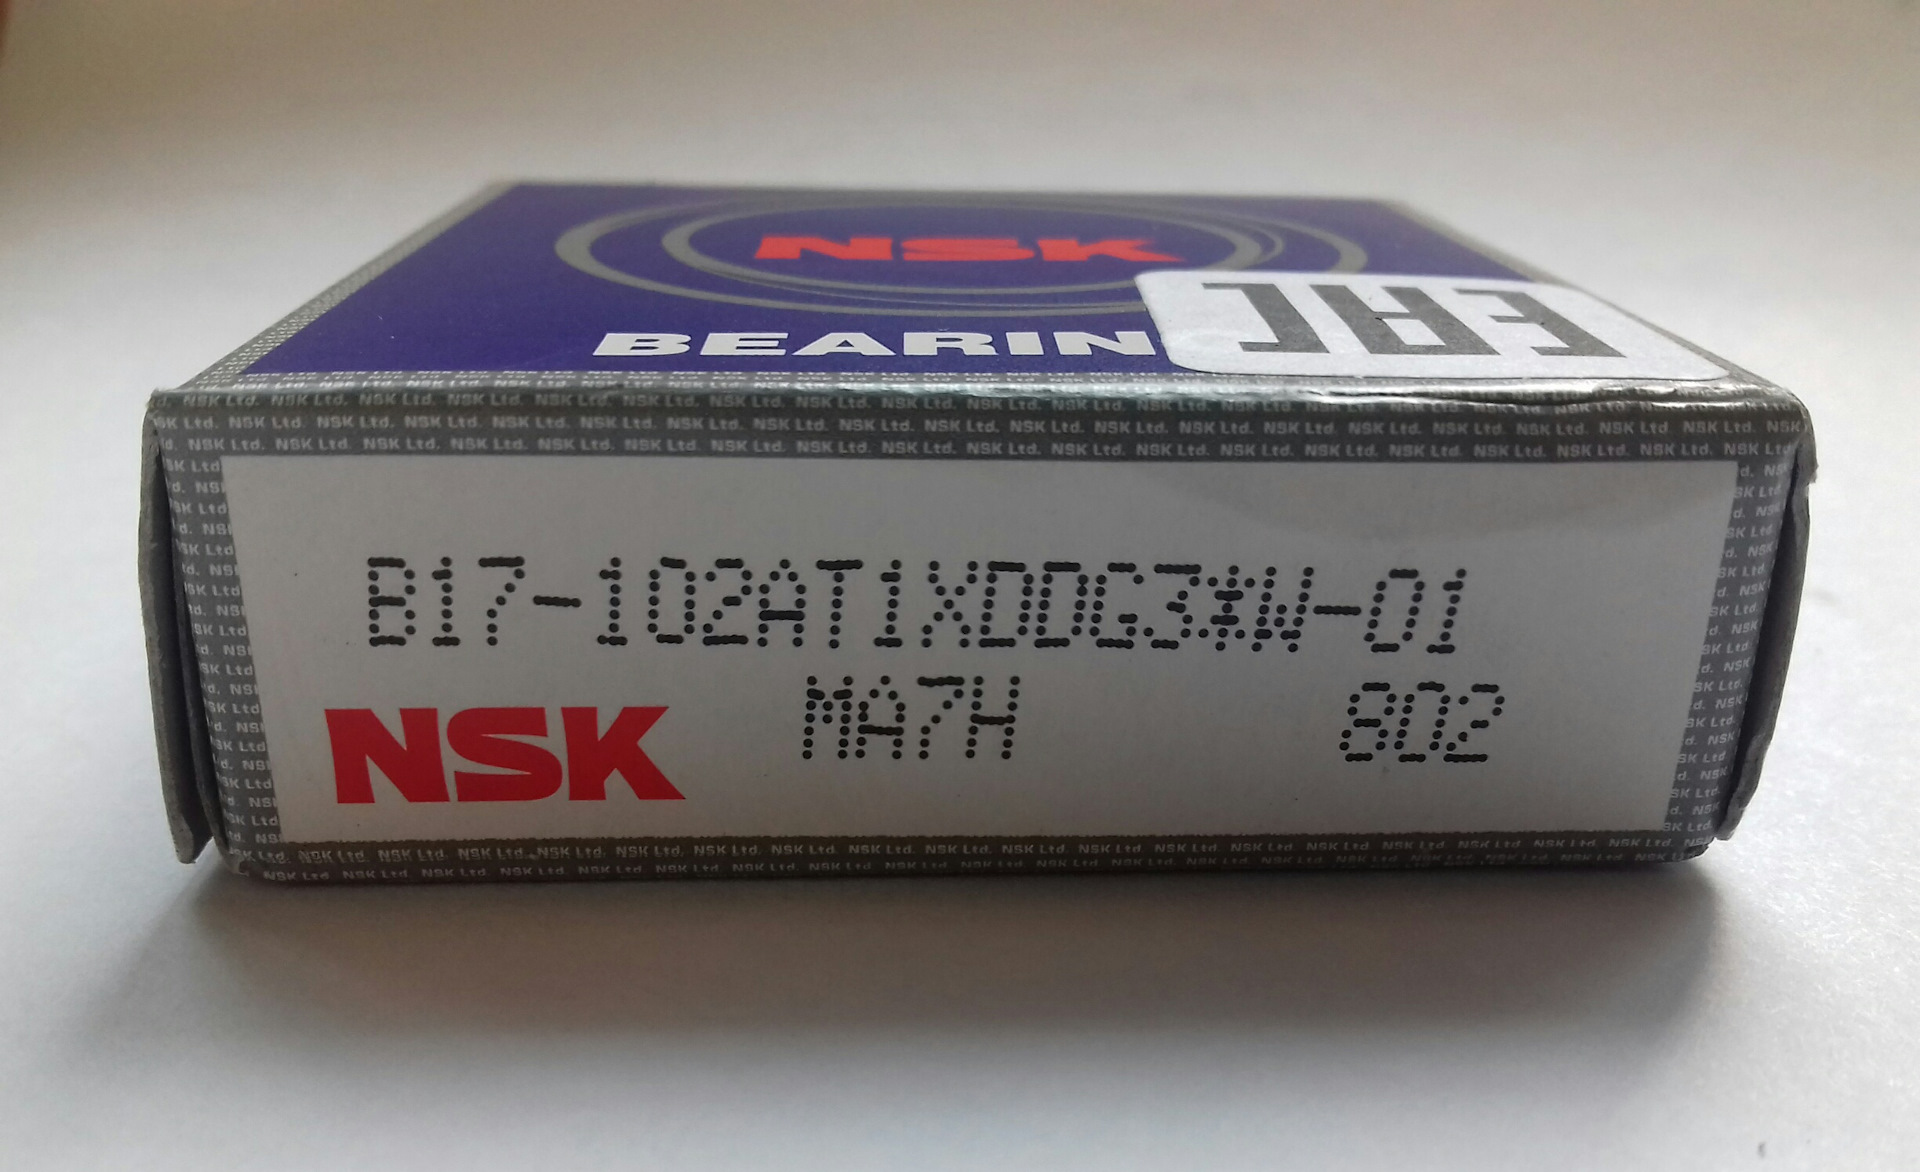 Какой nsk. NSK b17102at1xddg3w01. B17102at1xddg3*w01 подшипник. NSK b17-102at1xddg3*w-01. NSK b17-102at1xddg3*w-01 подшипник генератора передний.